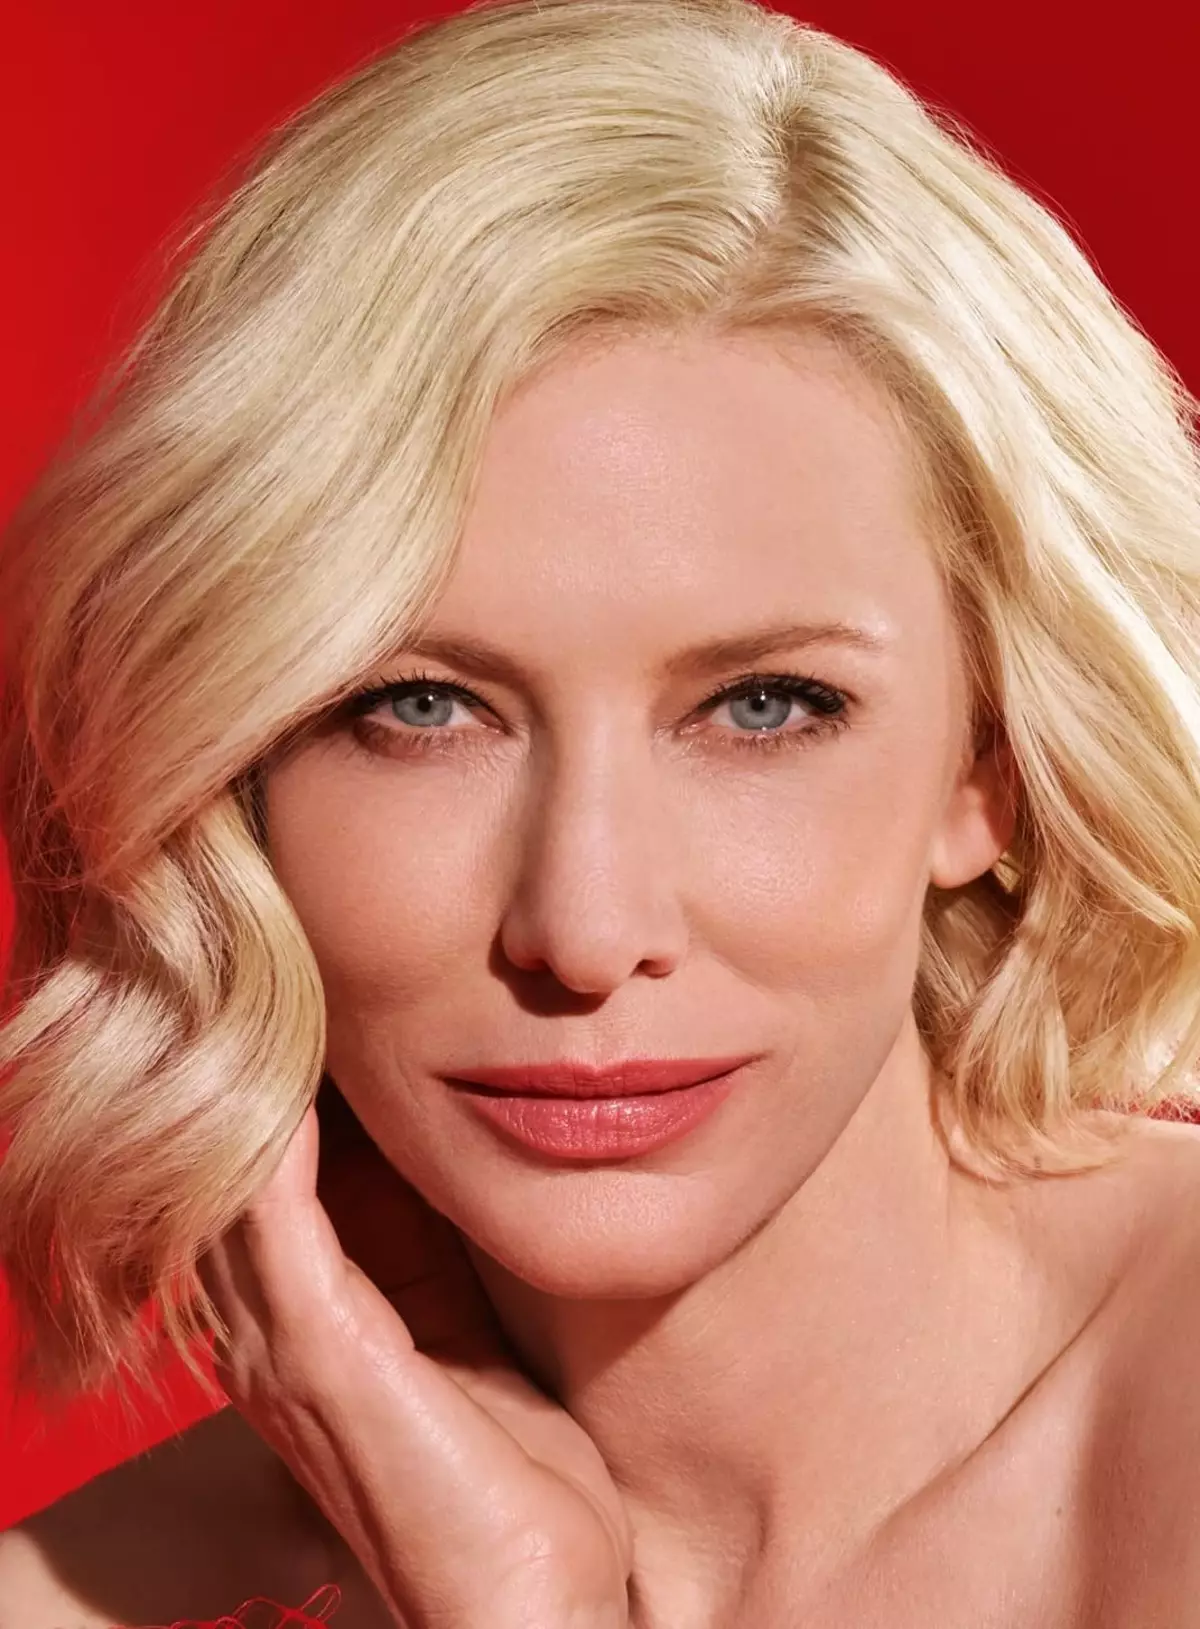 Kate Blanchett - Biografi, Kehidupan Pribadi, Foto, Berita, Aktris, Film, di Pemuda 2021